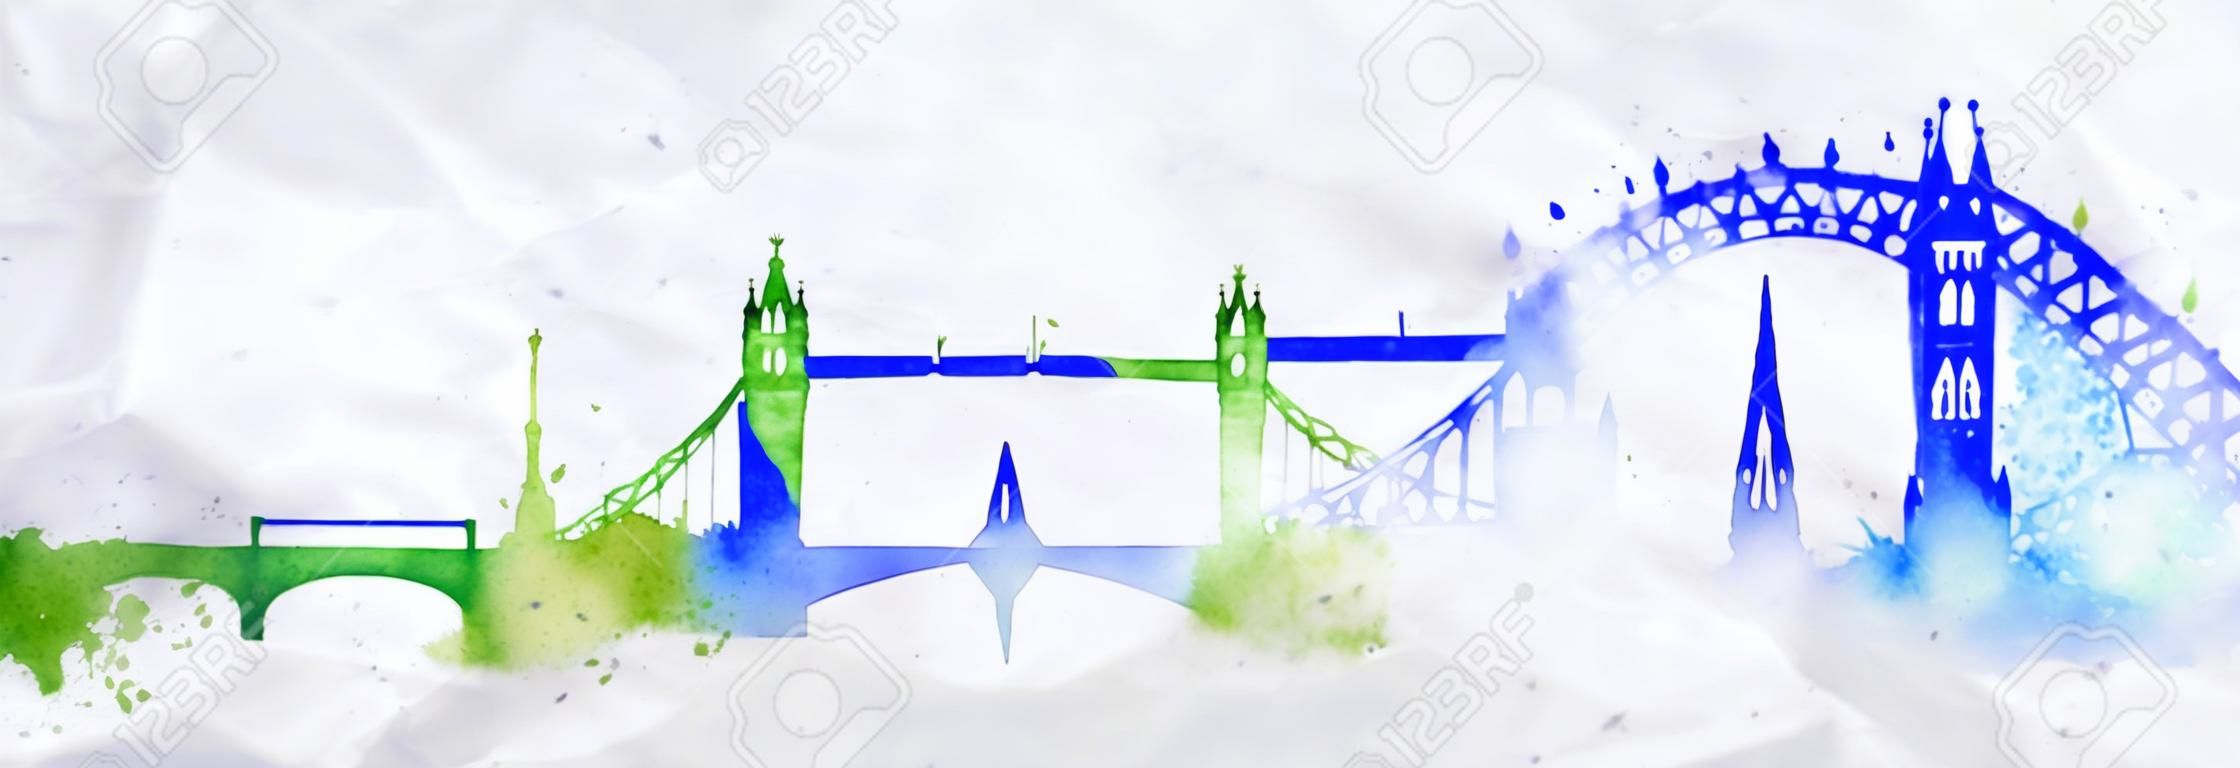 수채화의 밝아진 그린 실루엣 런던 도시 블루 그린 색상으로 줄무늬 랜드 마크 상품